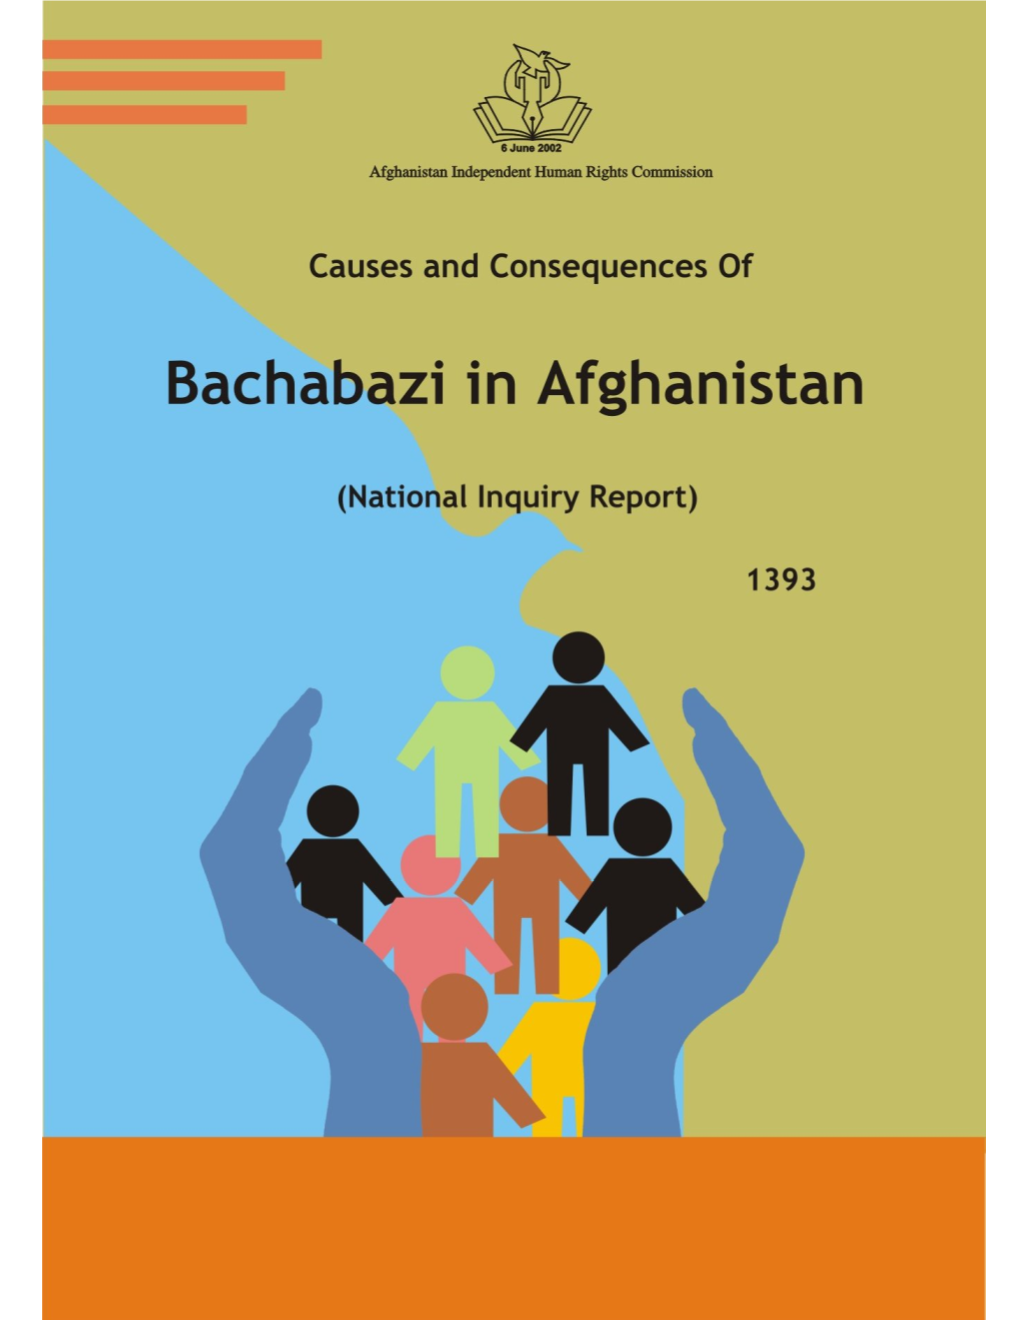 Bachabazi in Afghanistan